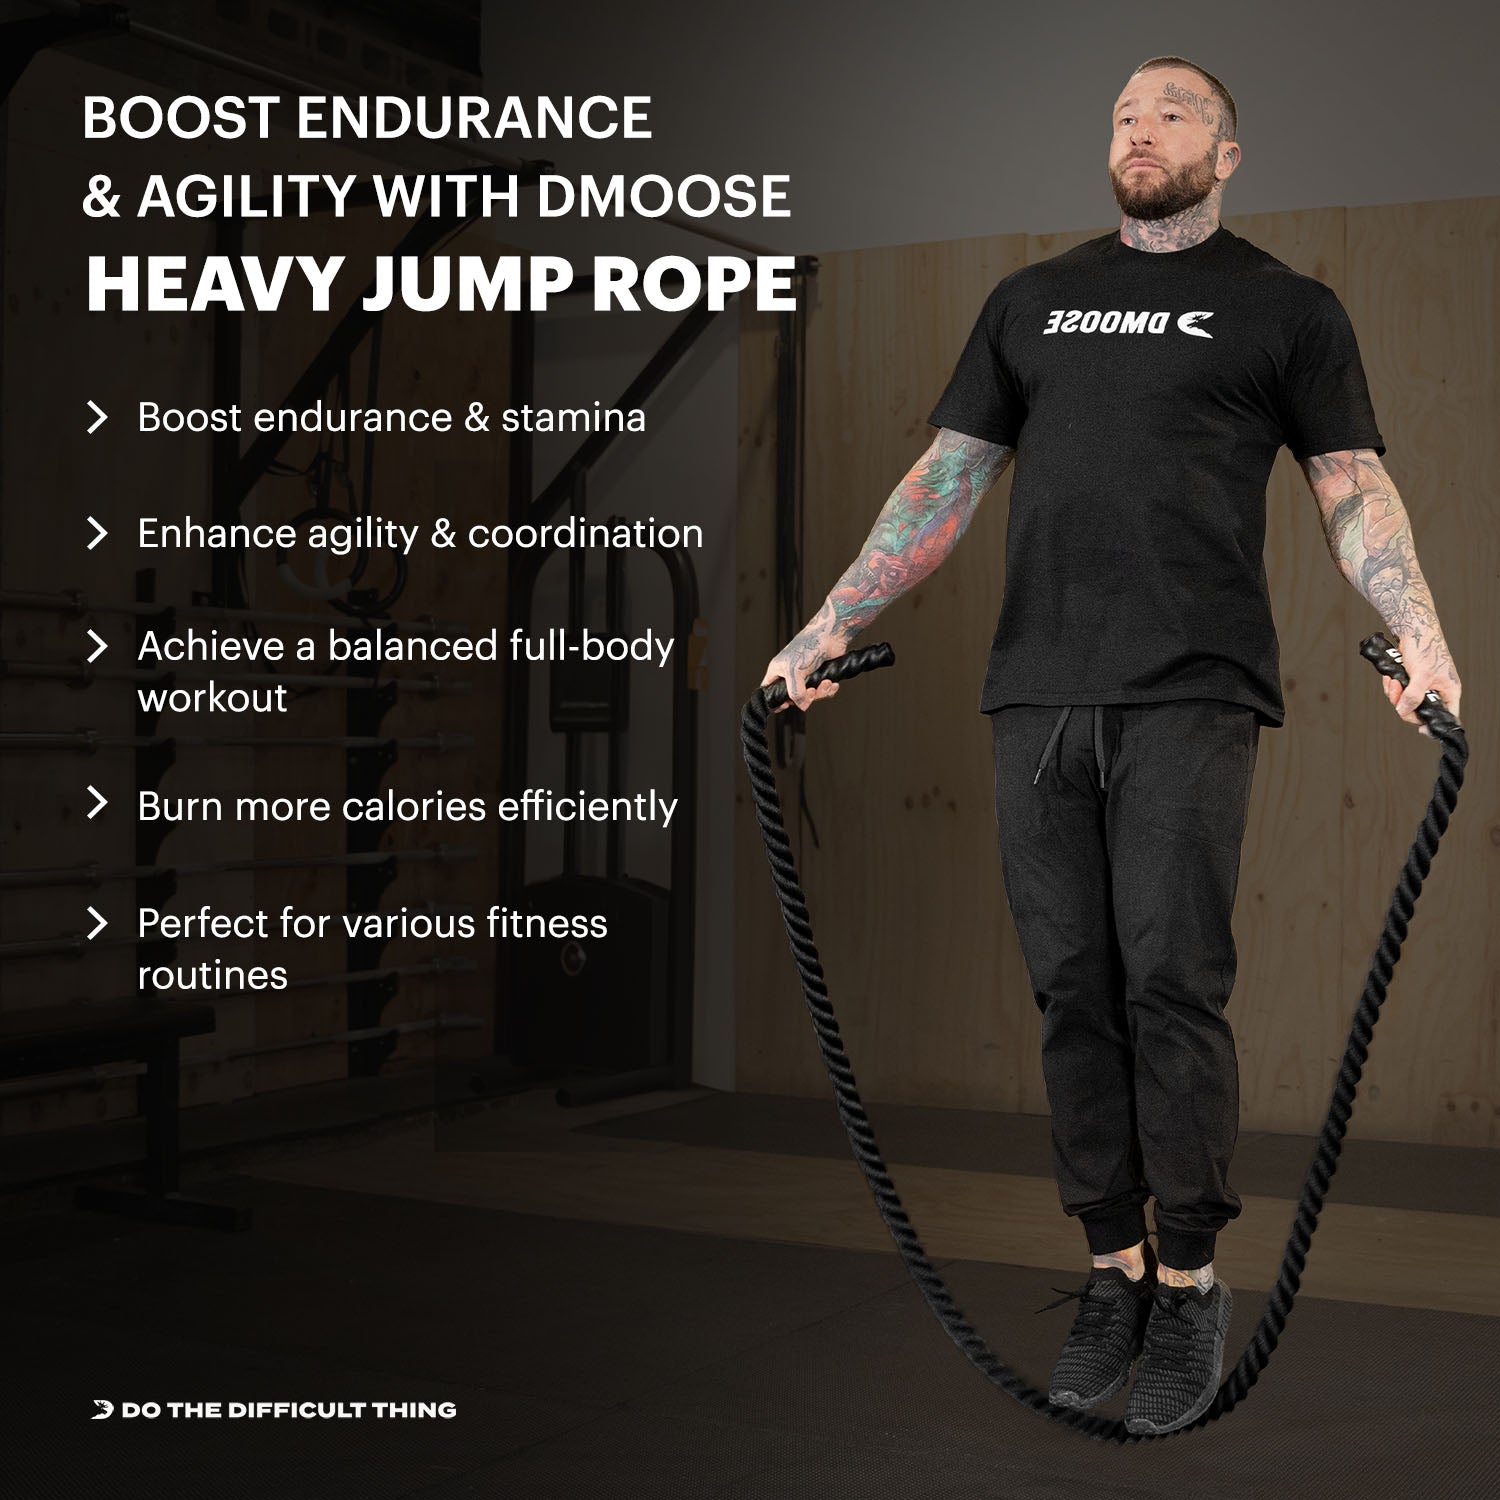 Heavy Jump Rope